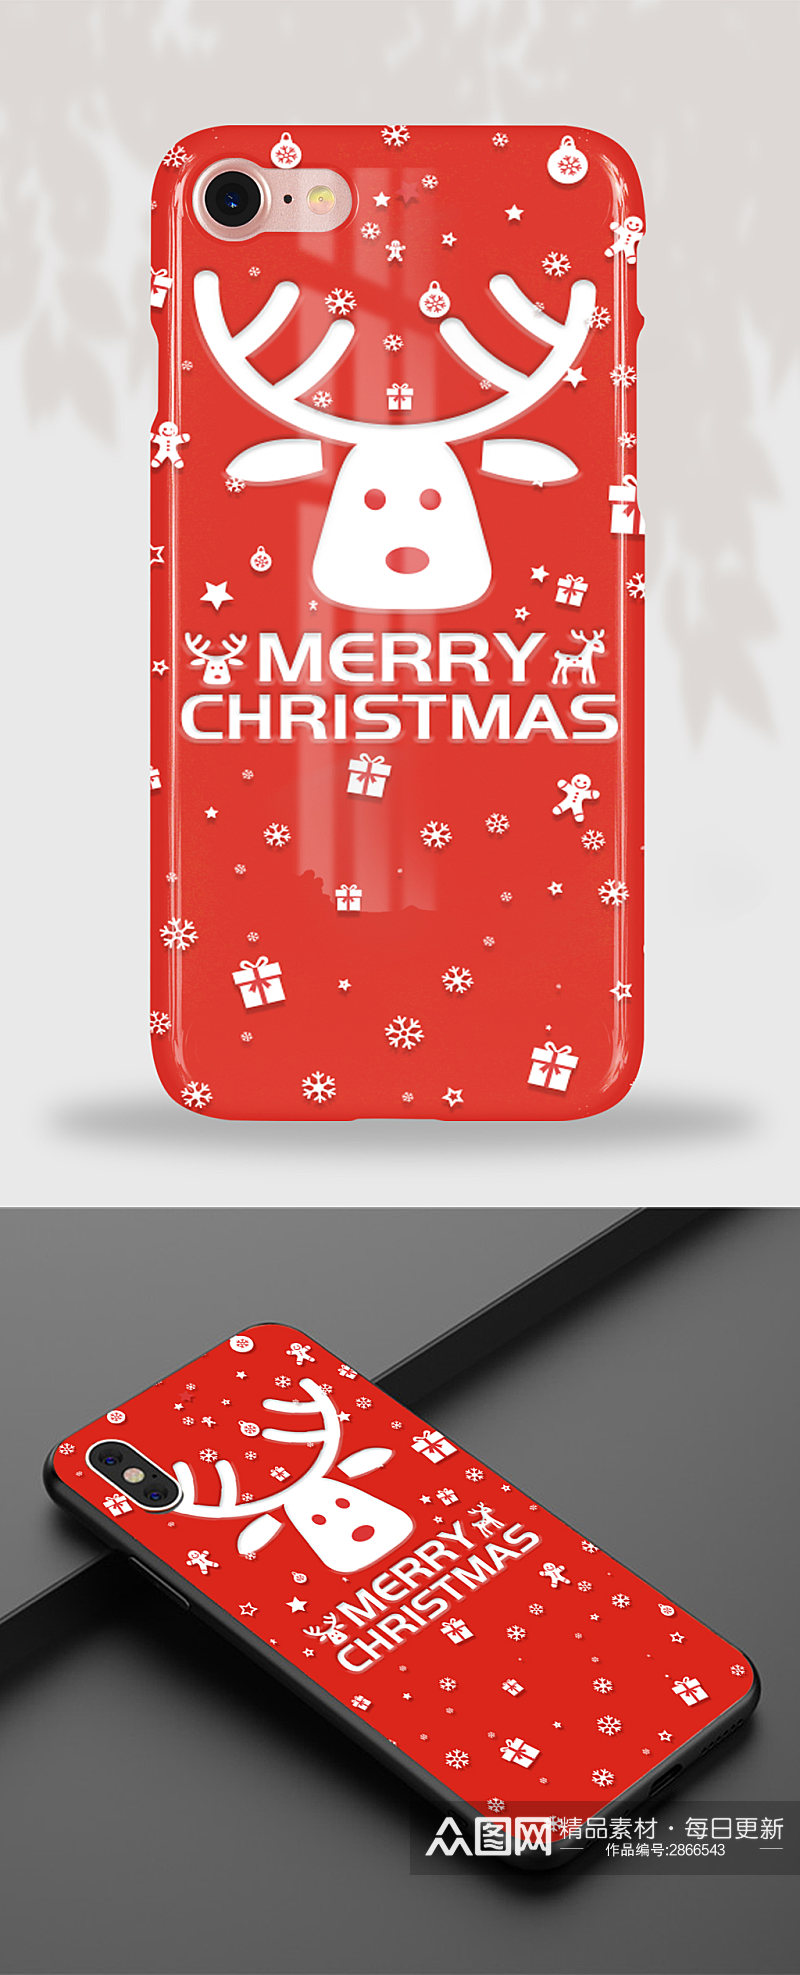 22红色创意圣诞节主题手机壳素材